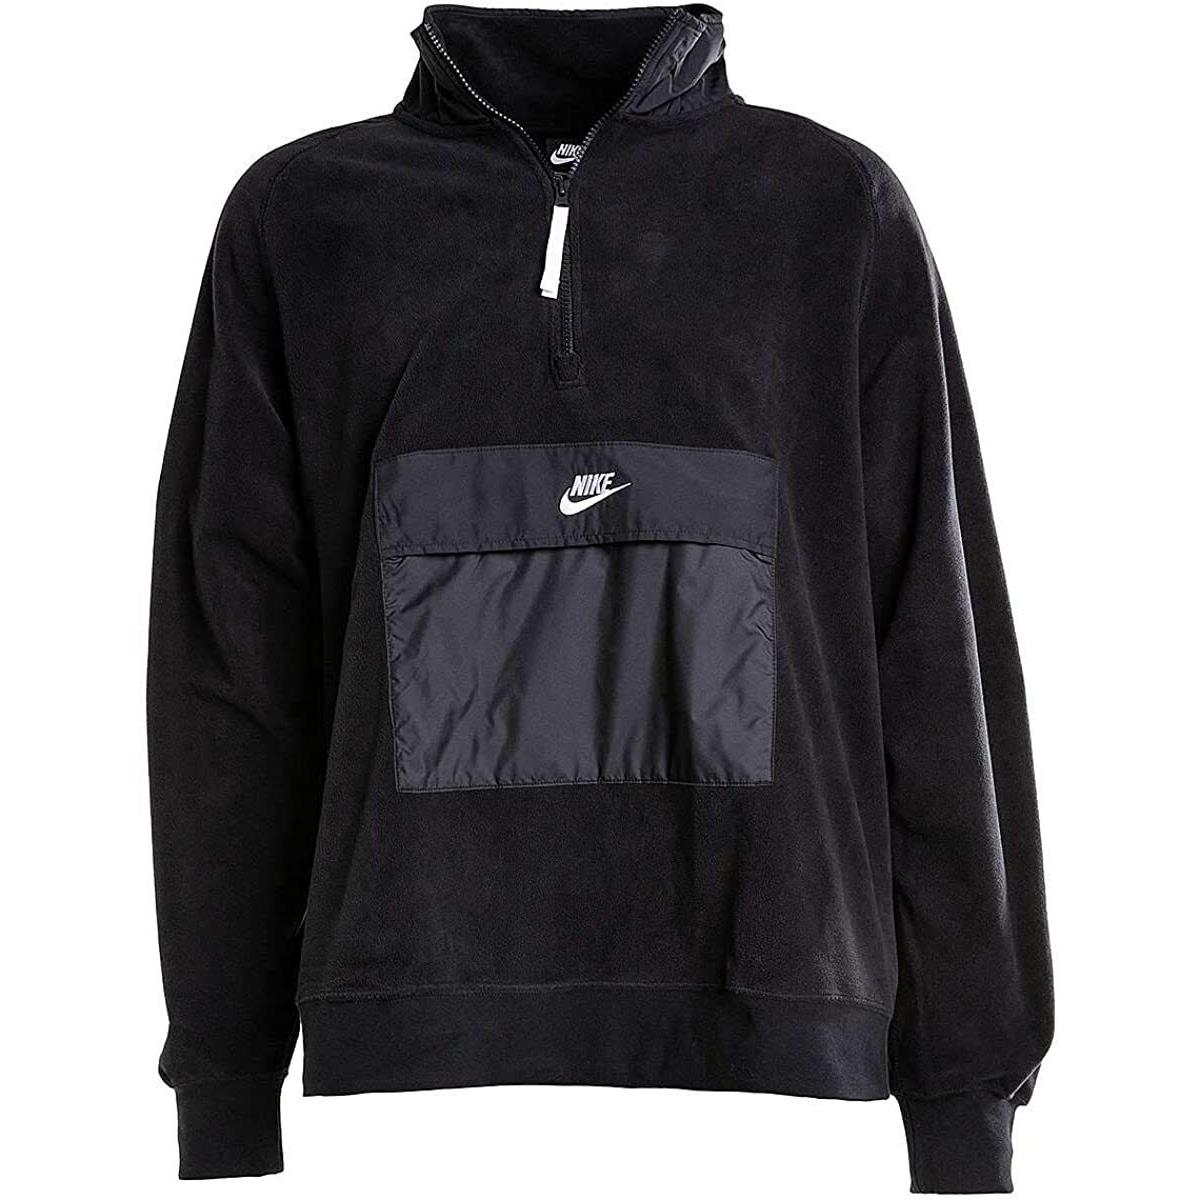 Nike Sportswear Half Zip Fleece Pullover Black White CJ4545-010 Size Small